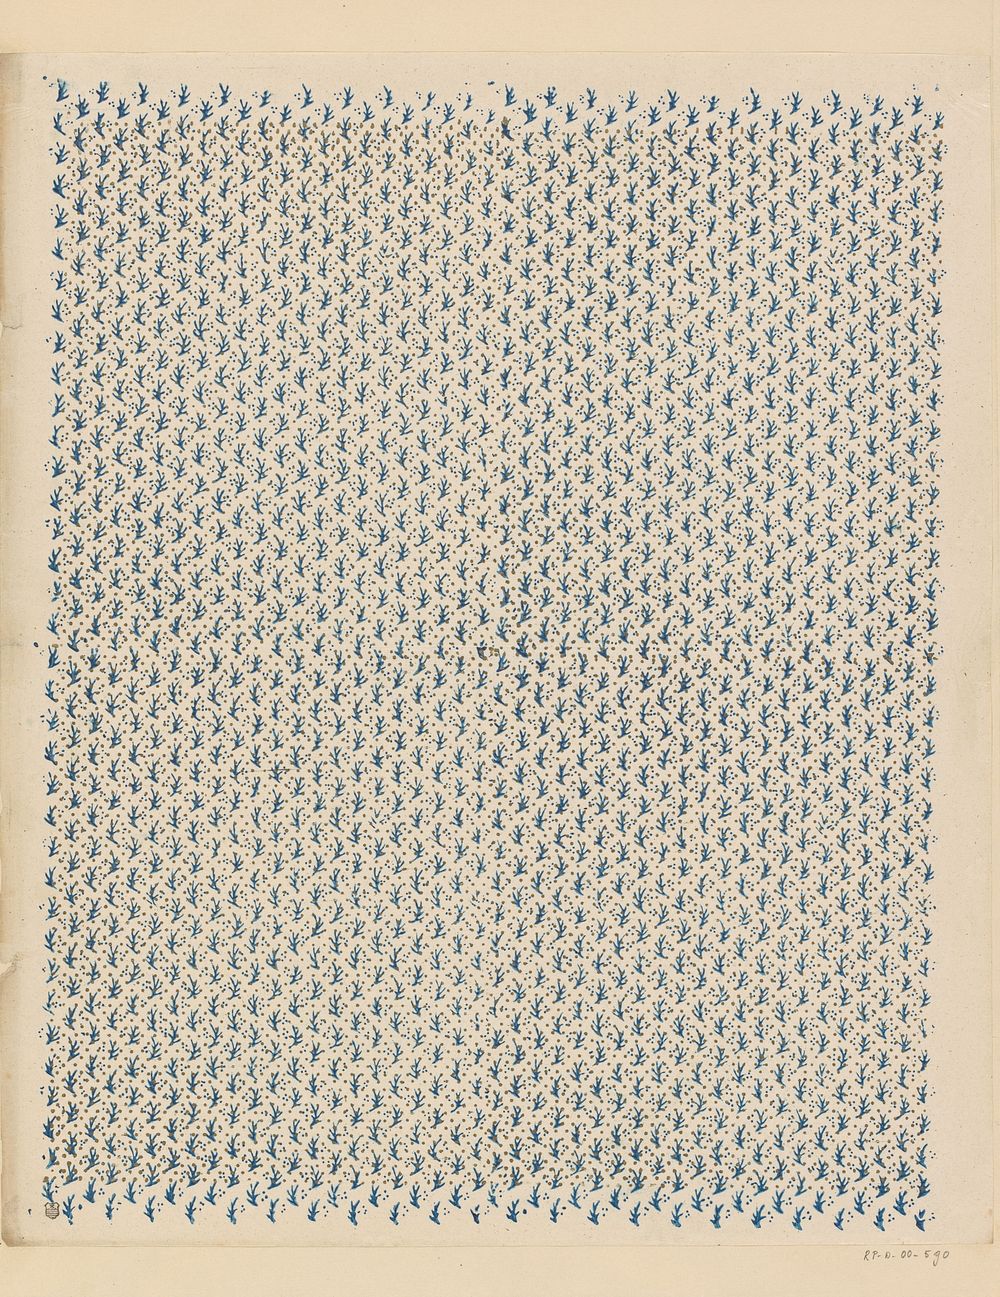 Blad met strooipatroon van takmotief en punten (1800 - 1900) by anonymous